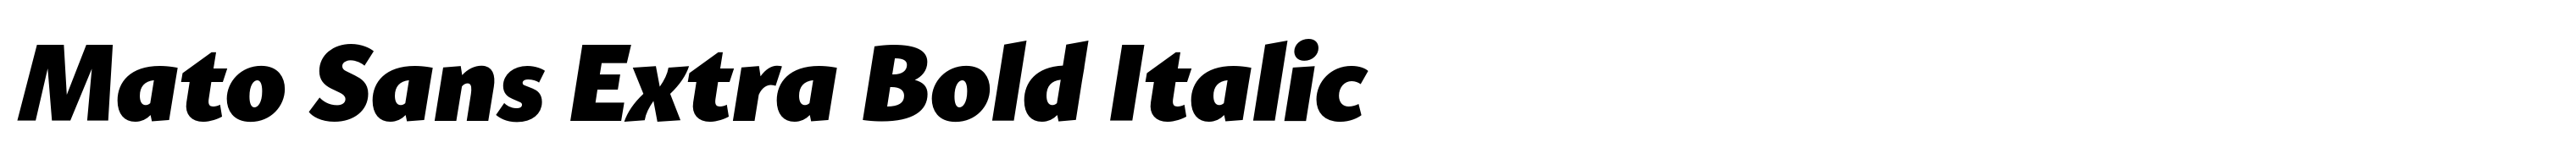 Mato Sans Extra Bold Italic